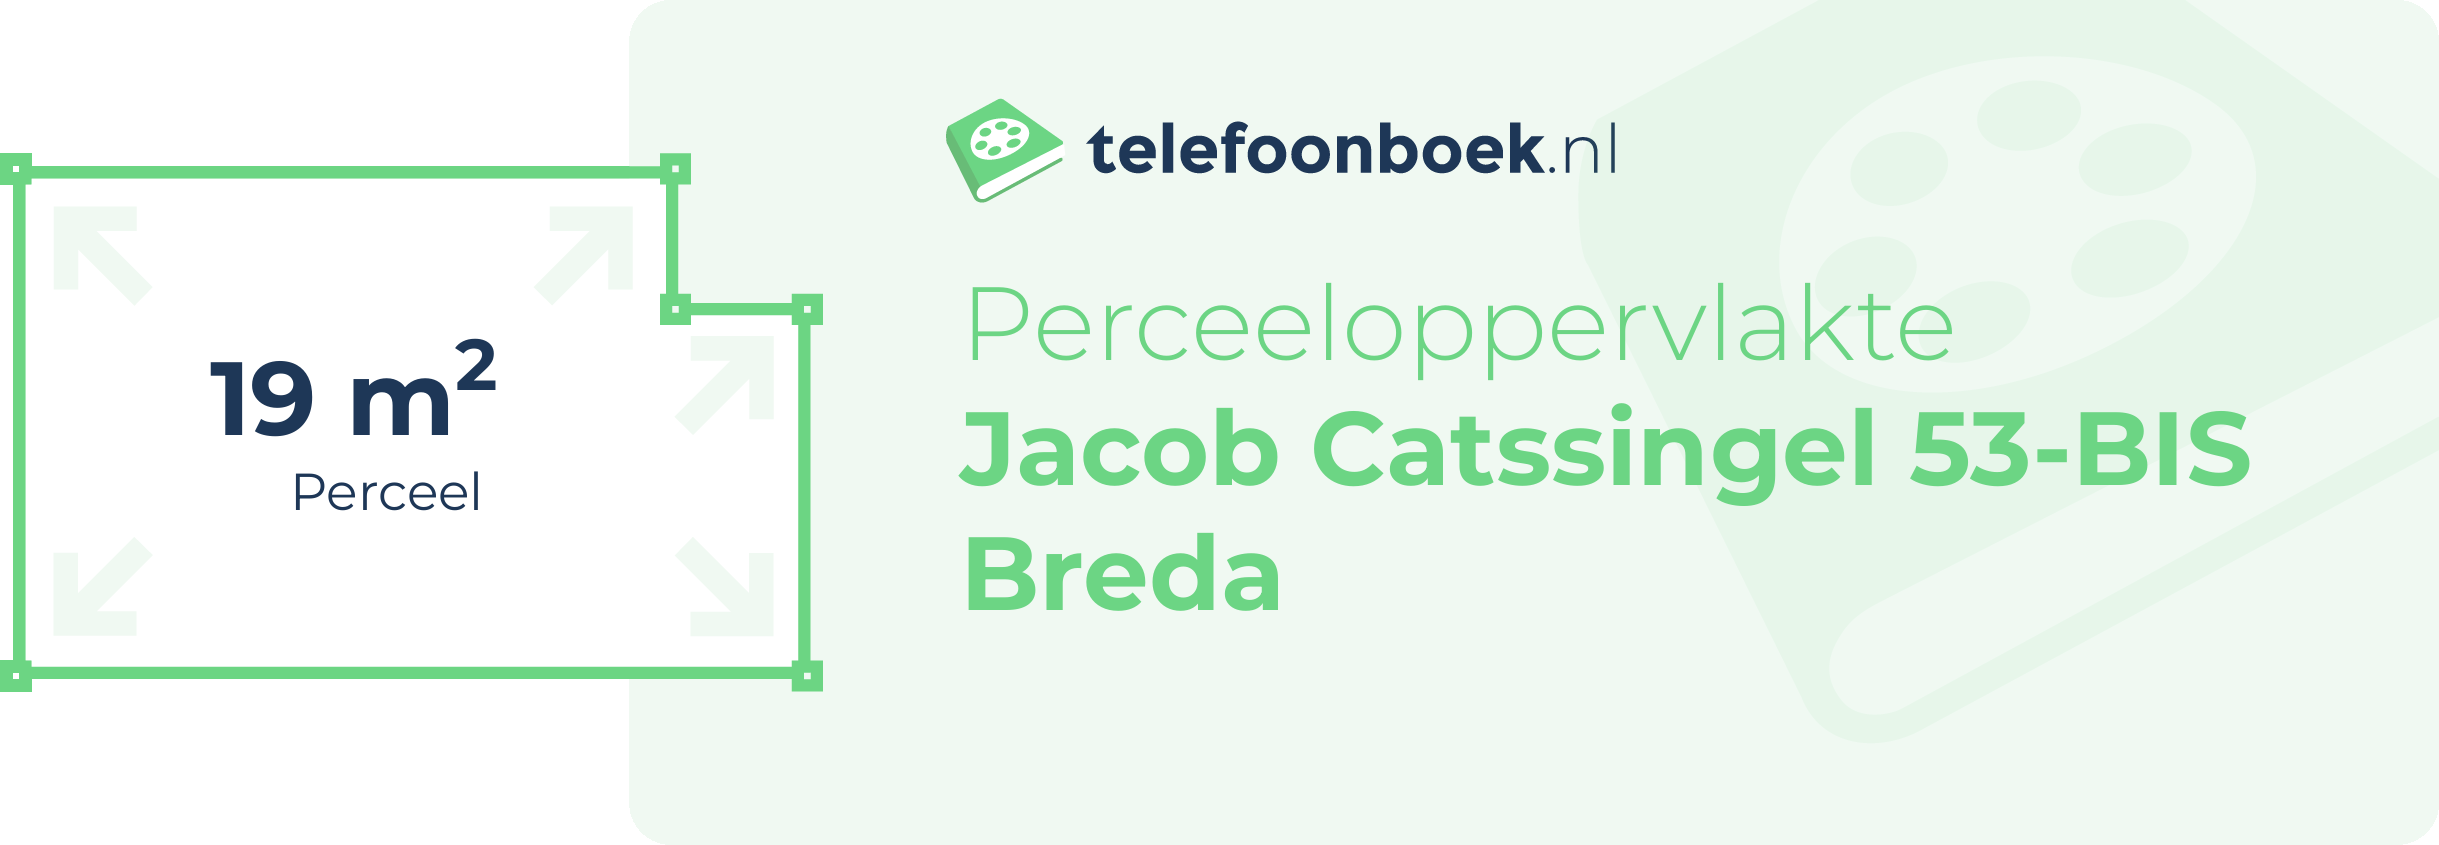 Perceeloppervlakte Jacob Catssingel 53-BIS Breda